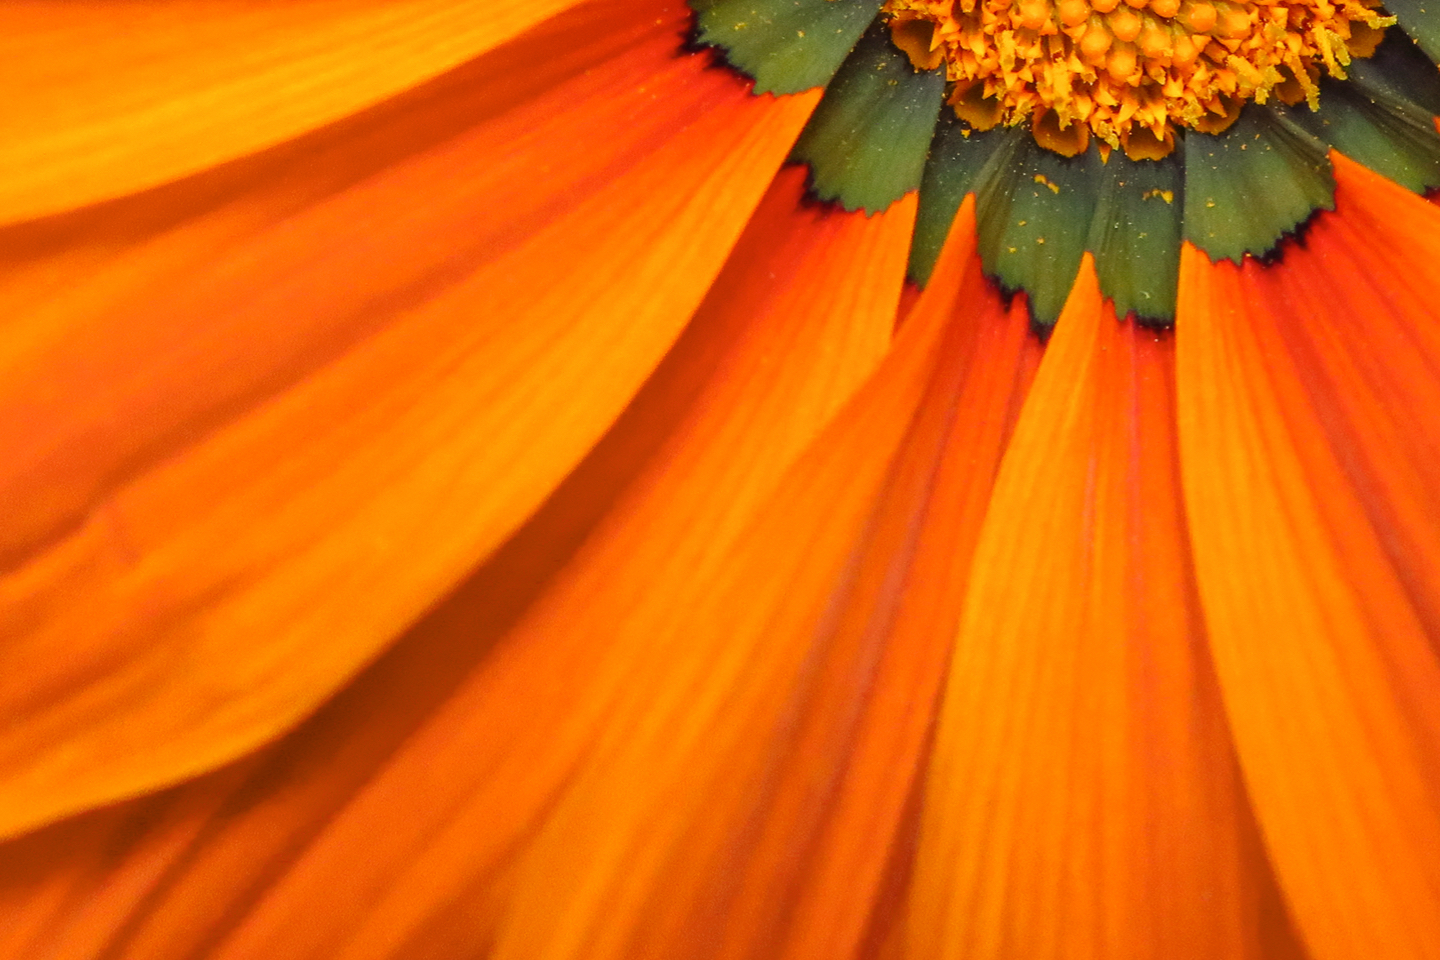 Orange flower background